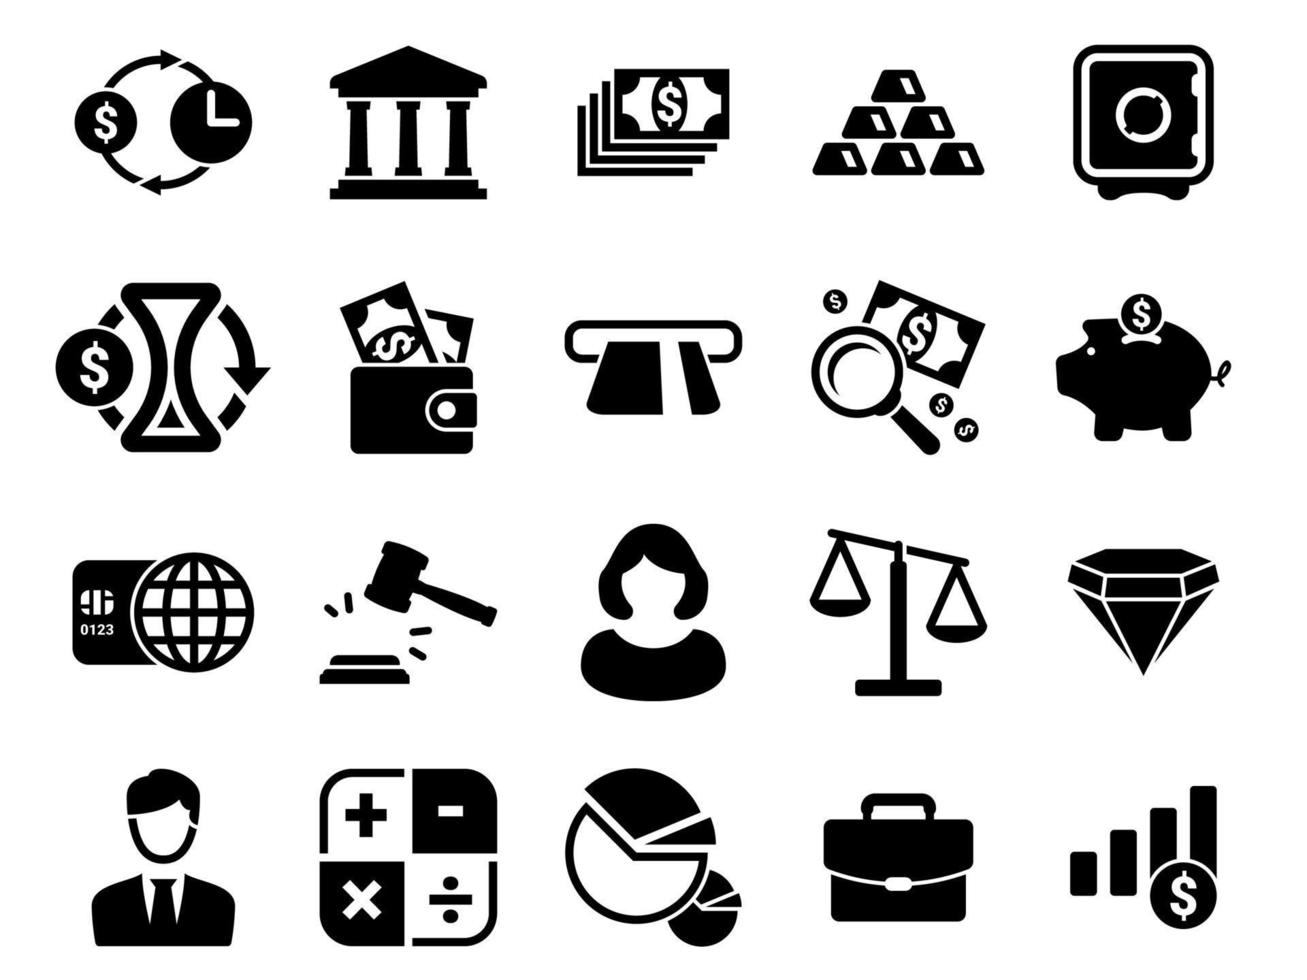 ensemble d'icônes simples sur un thème finance, argent, banque, épargne, image vectorielle, conception, collection, plat, signe, symbole, élément, objet, illustration. icônes noires isolées sur fond blanc vecteur